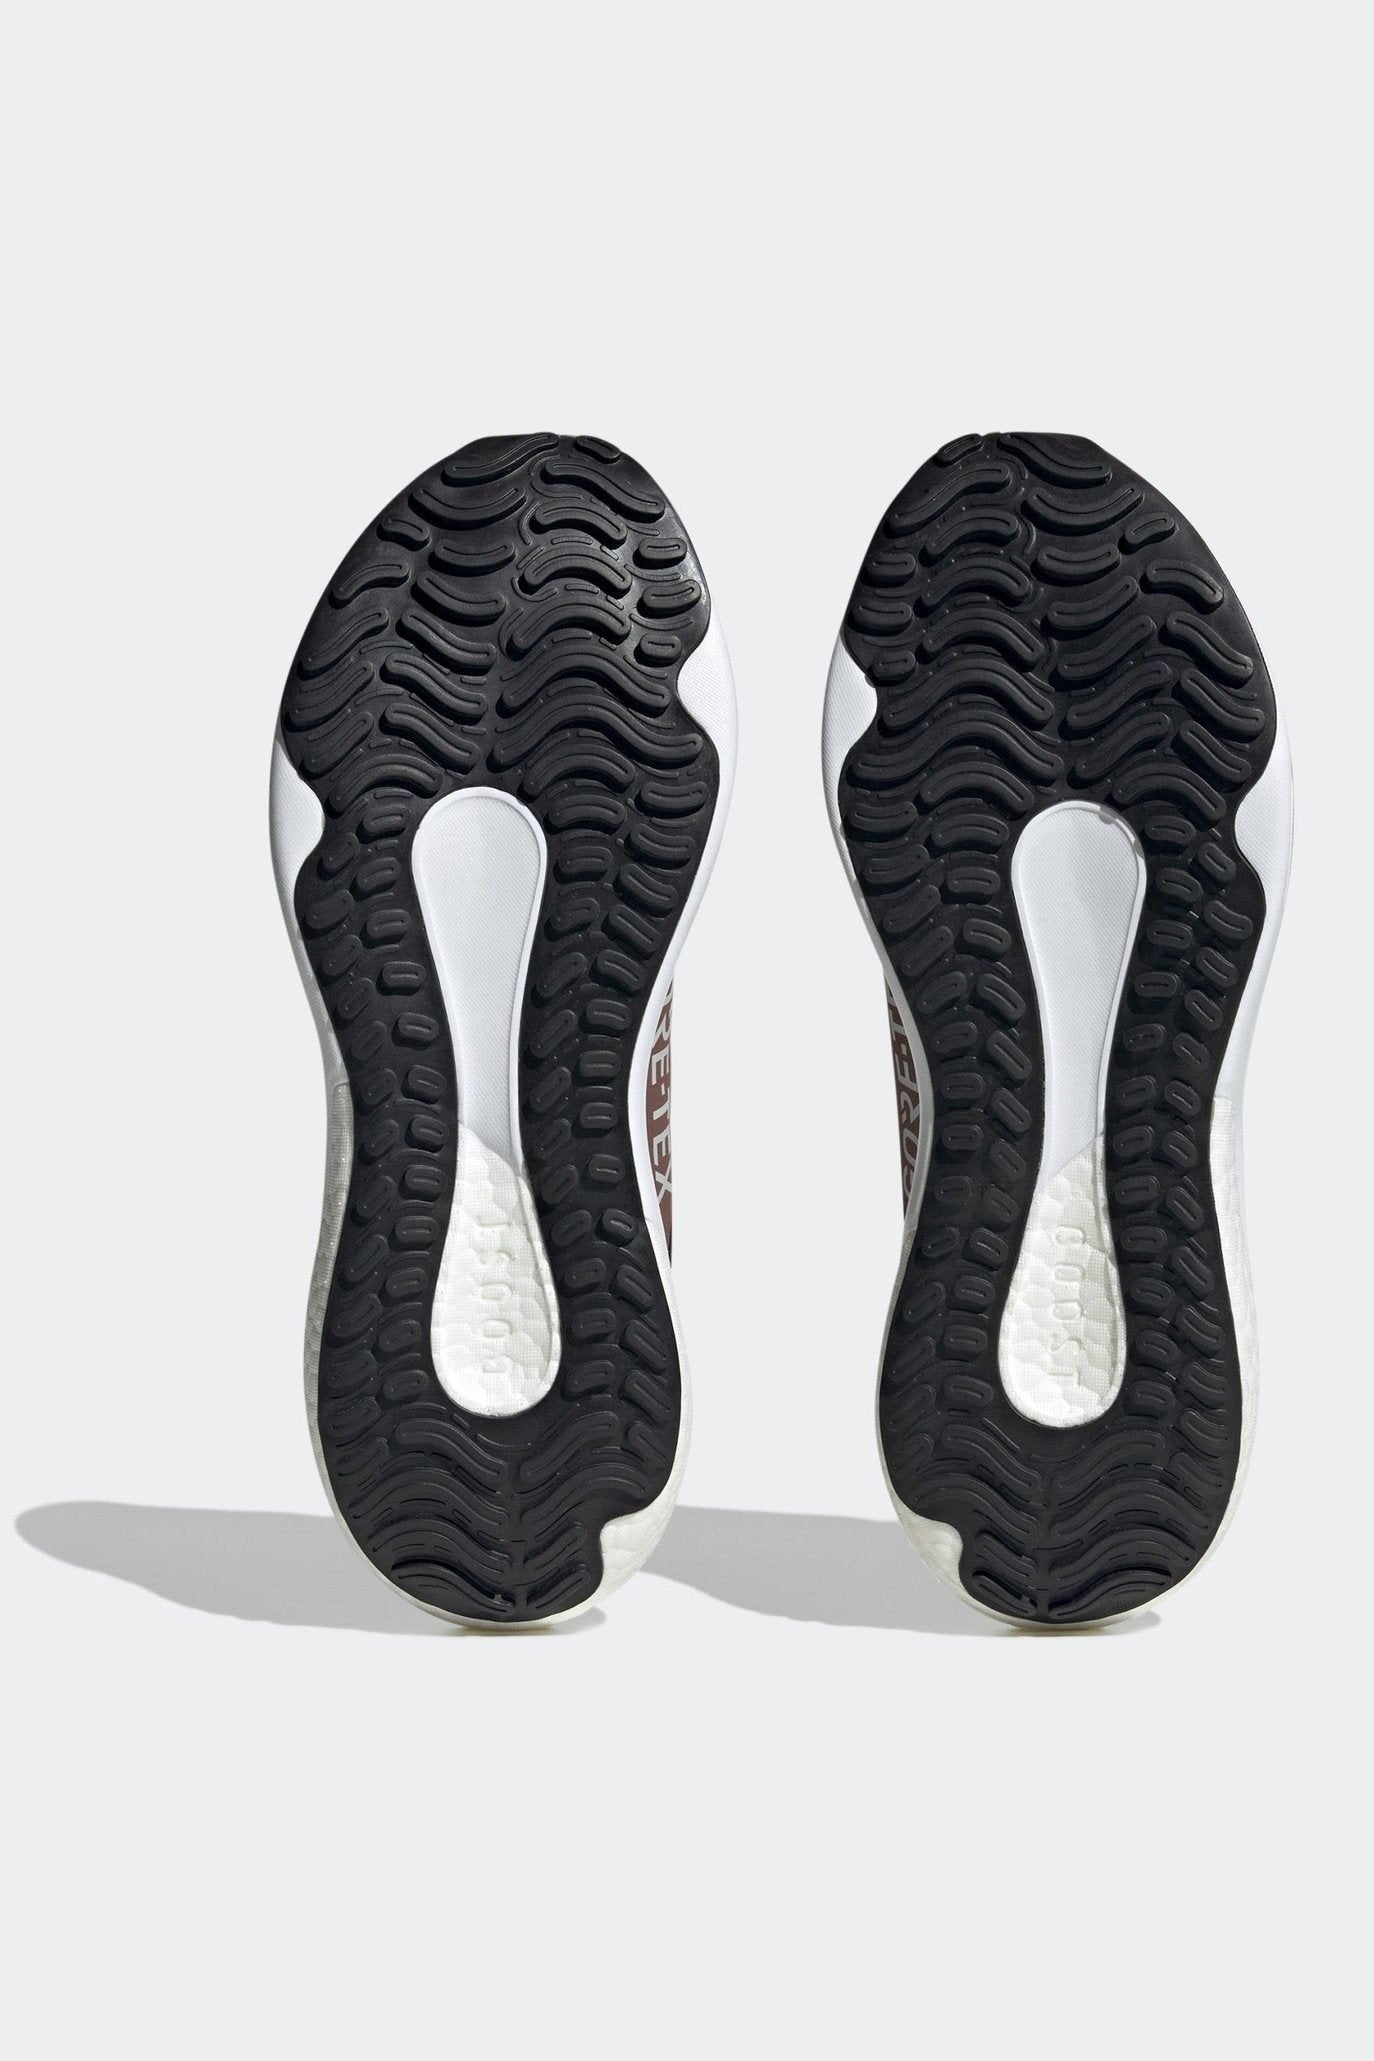 ADIDAS - נעלי ספורט לגברים SUPERNOVA 3 GTX בצבע שחור וירוק זית - MASHBIR//365